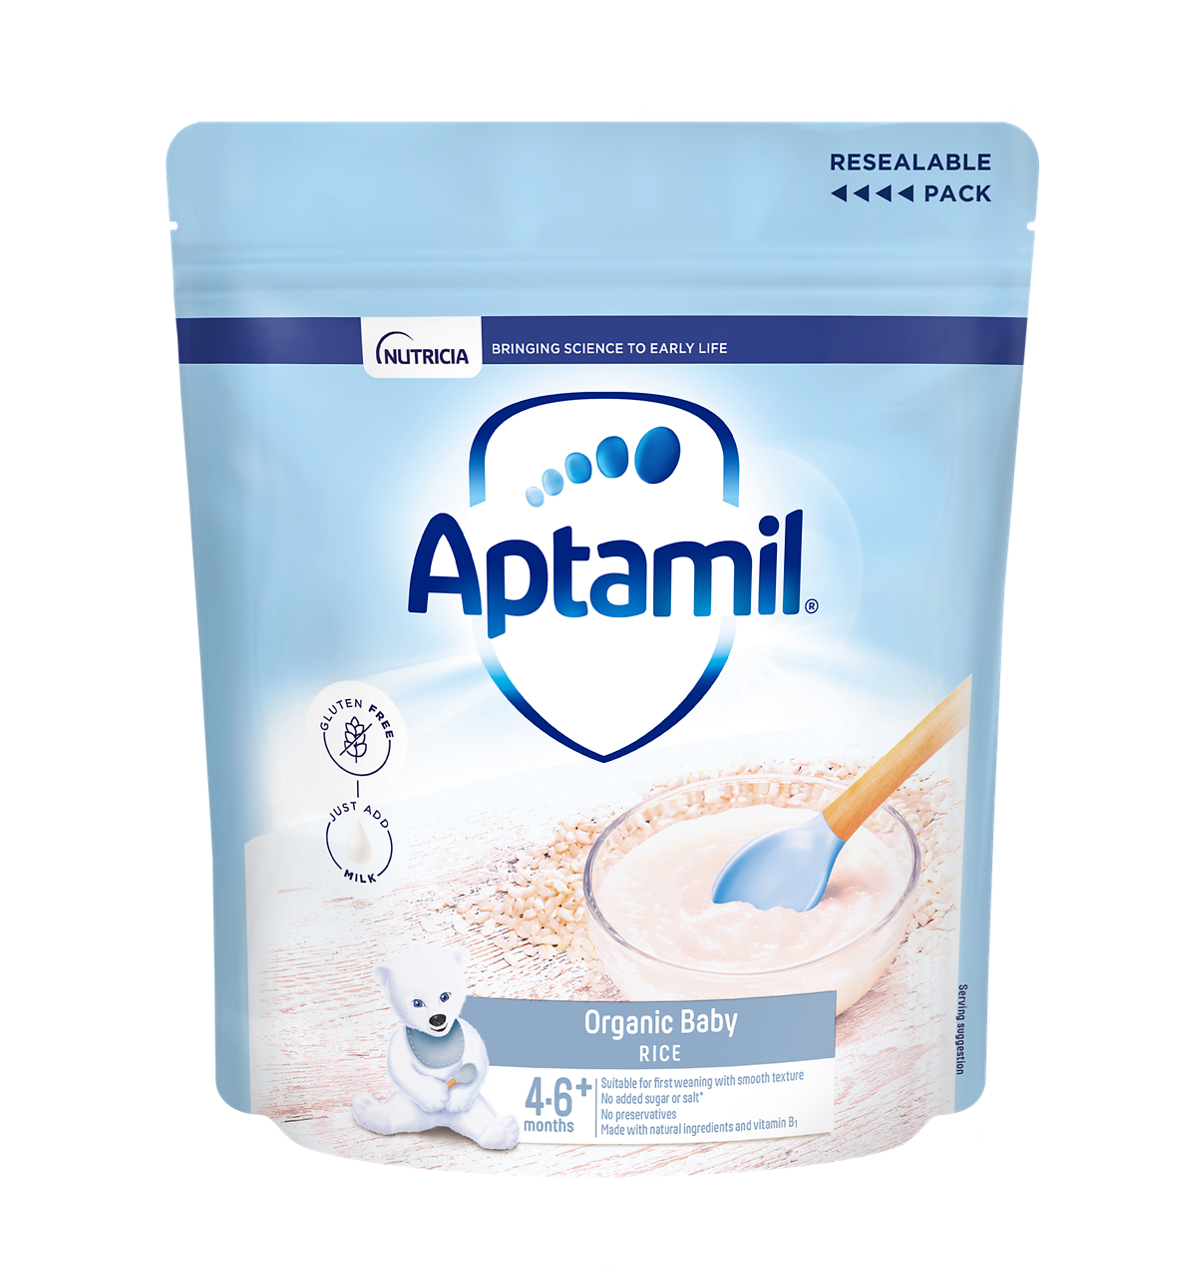 aptamil-doy-organic-baby-rice-front-v3.png